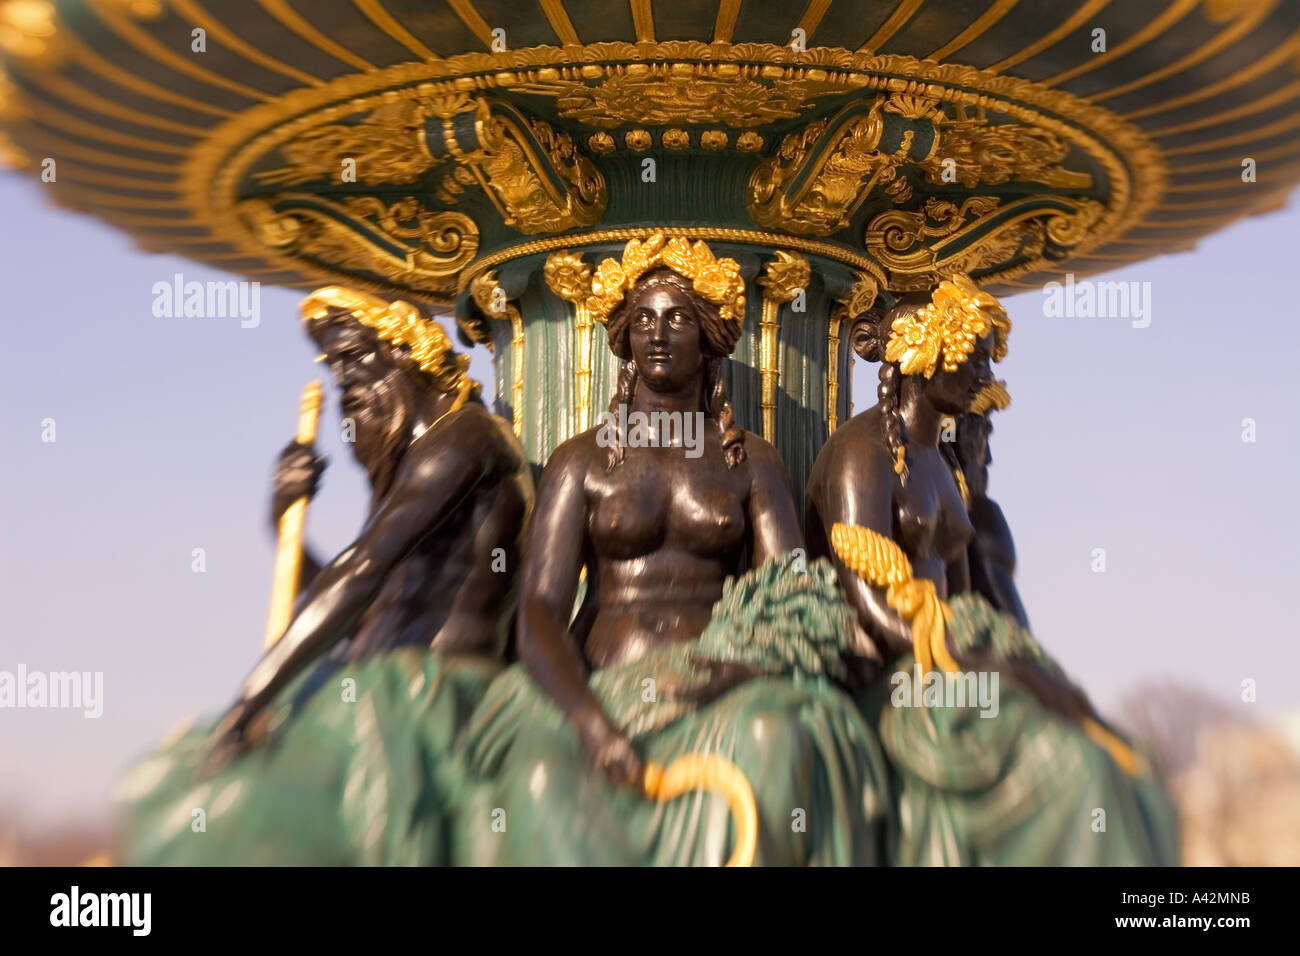 Paris France Place de la Concorde fountain sculptures Stock Photo